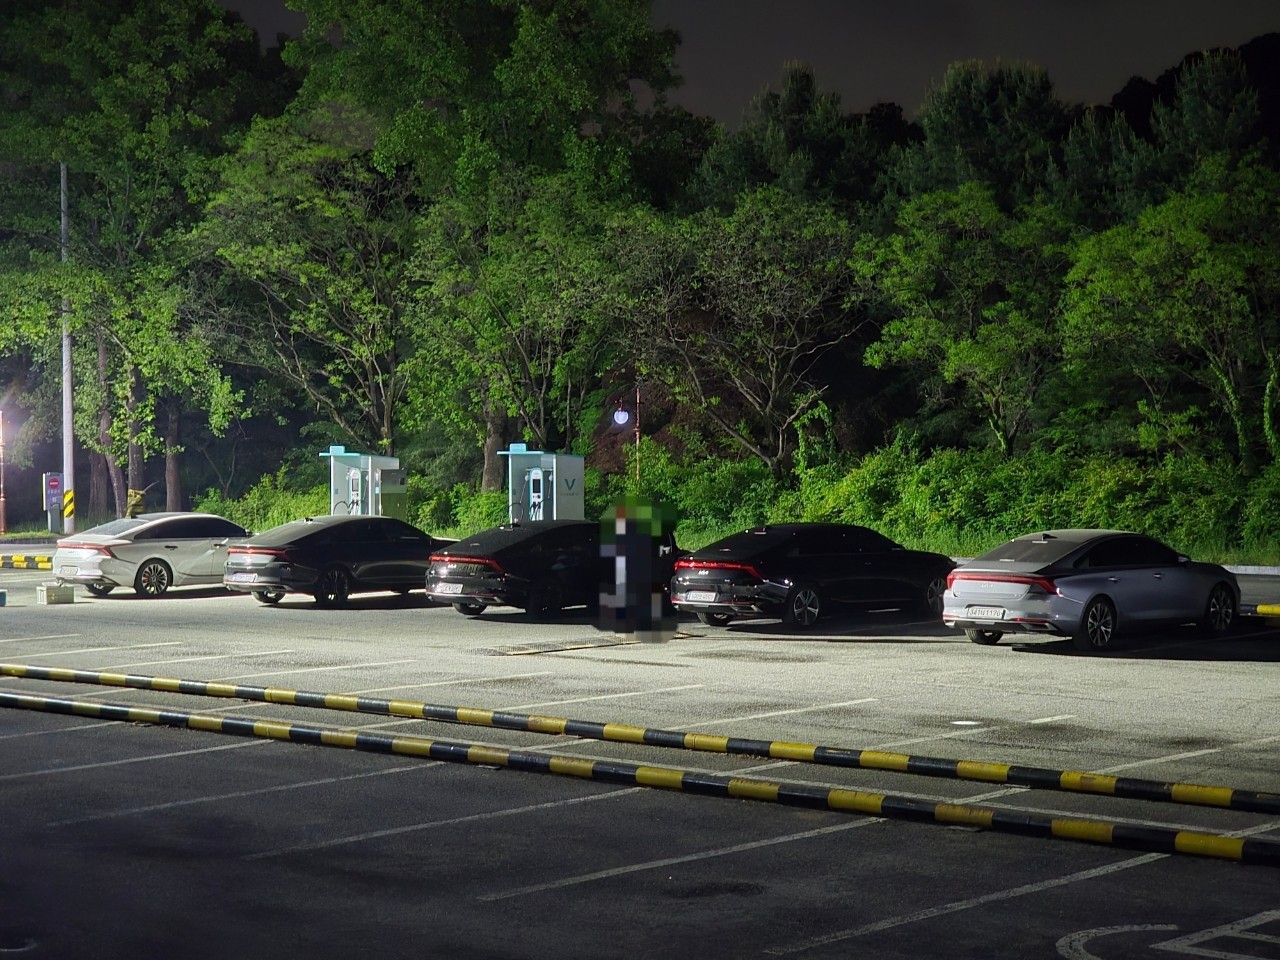 야외, 나무, 차량, 육상 차량이(가) 표시된 사진

자동 생성된 설명